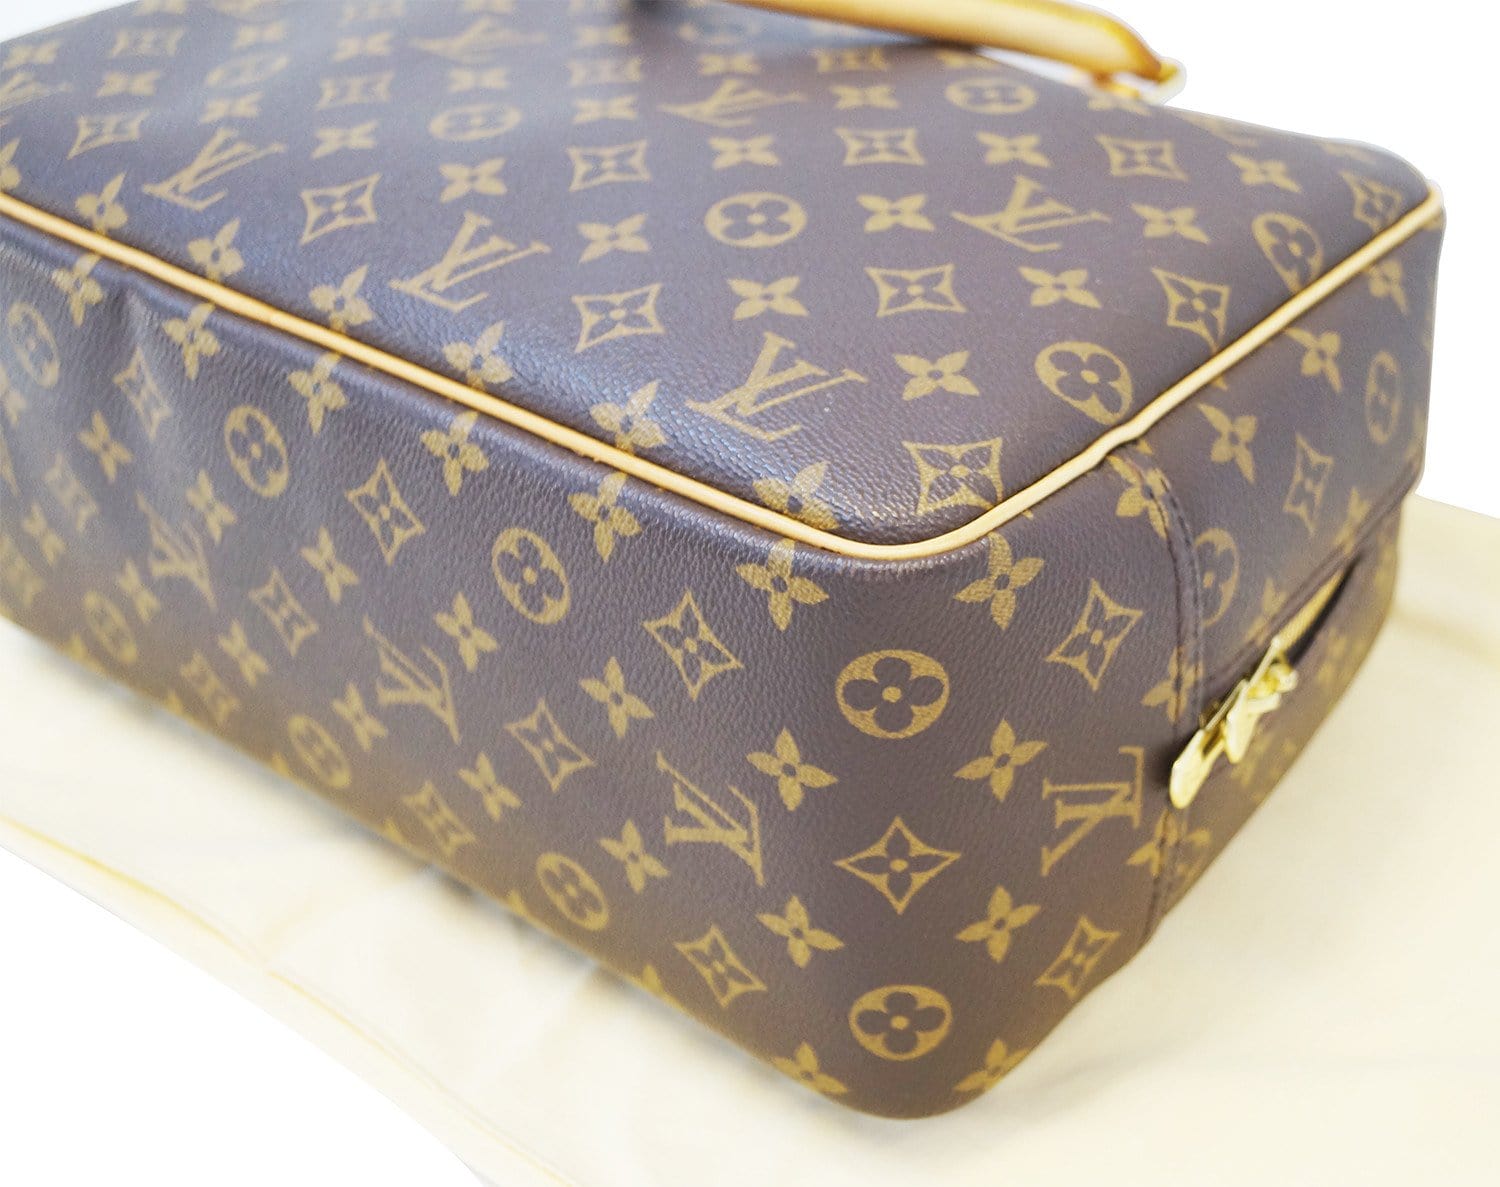 Louis Vuitton Deauville Handbag Auction